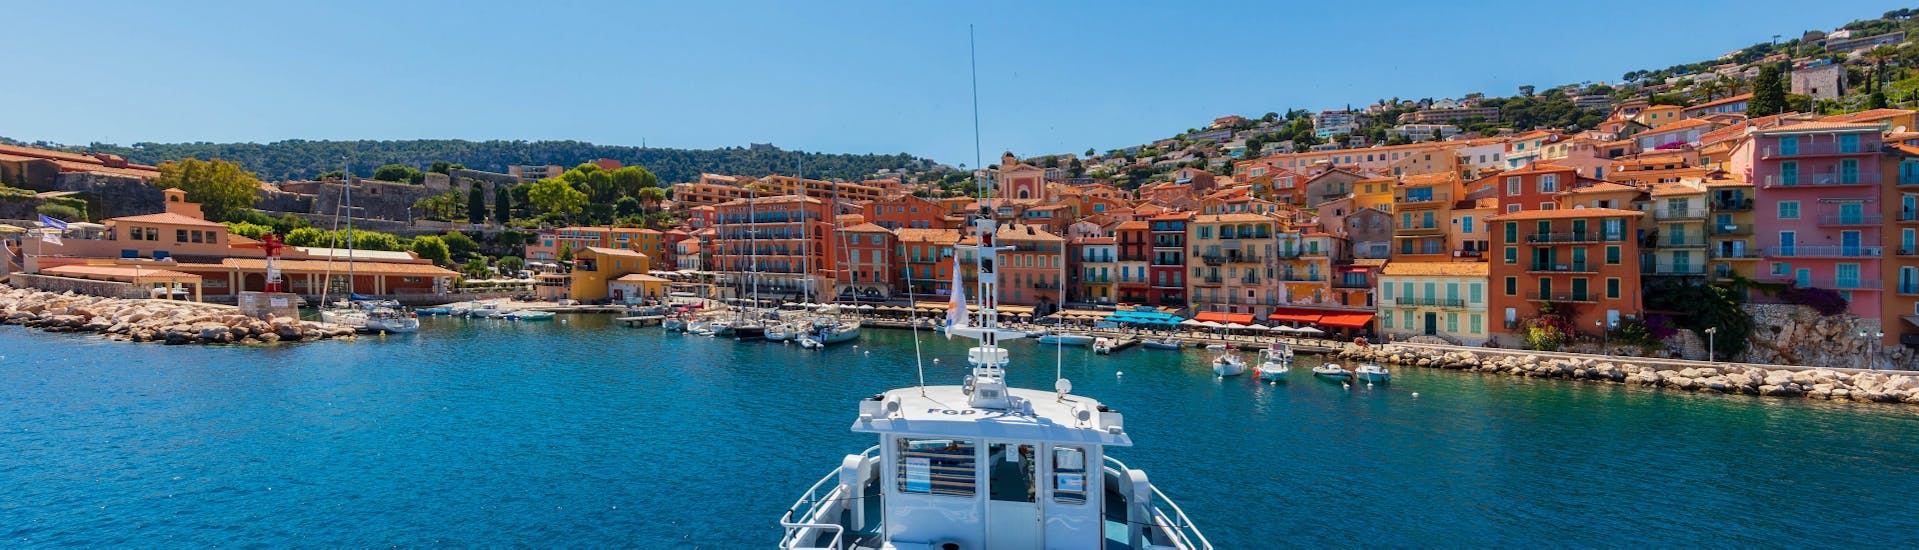 Bista dalla barca durante la Gita in barca da Nizza lungo la costa con Trans Côte d'Azur Cannes & Nizza.